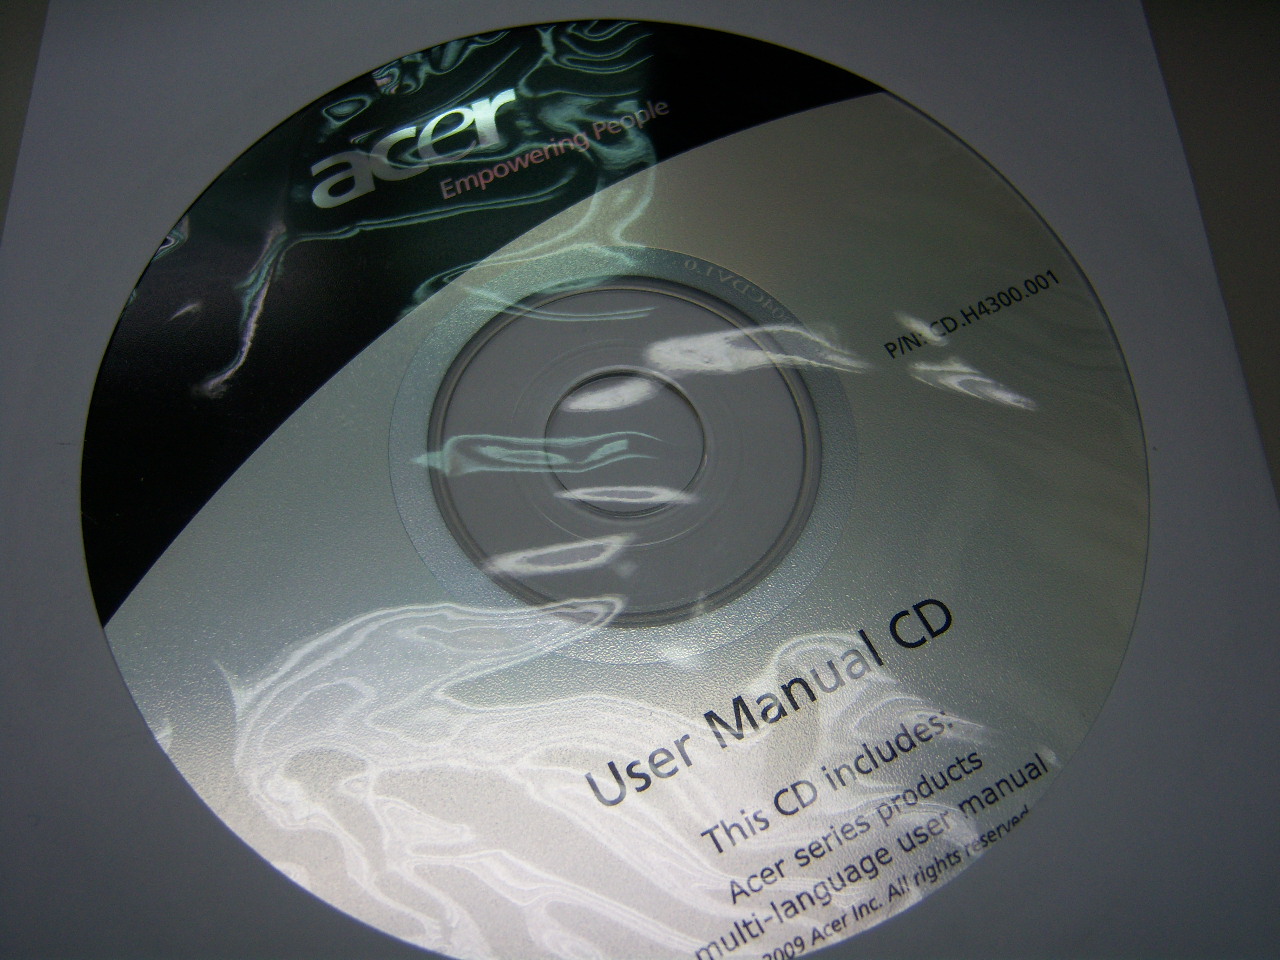 F900USER CD.JPG